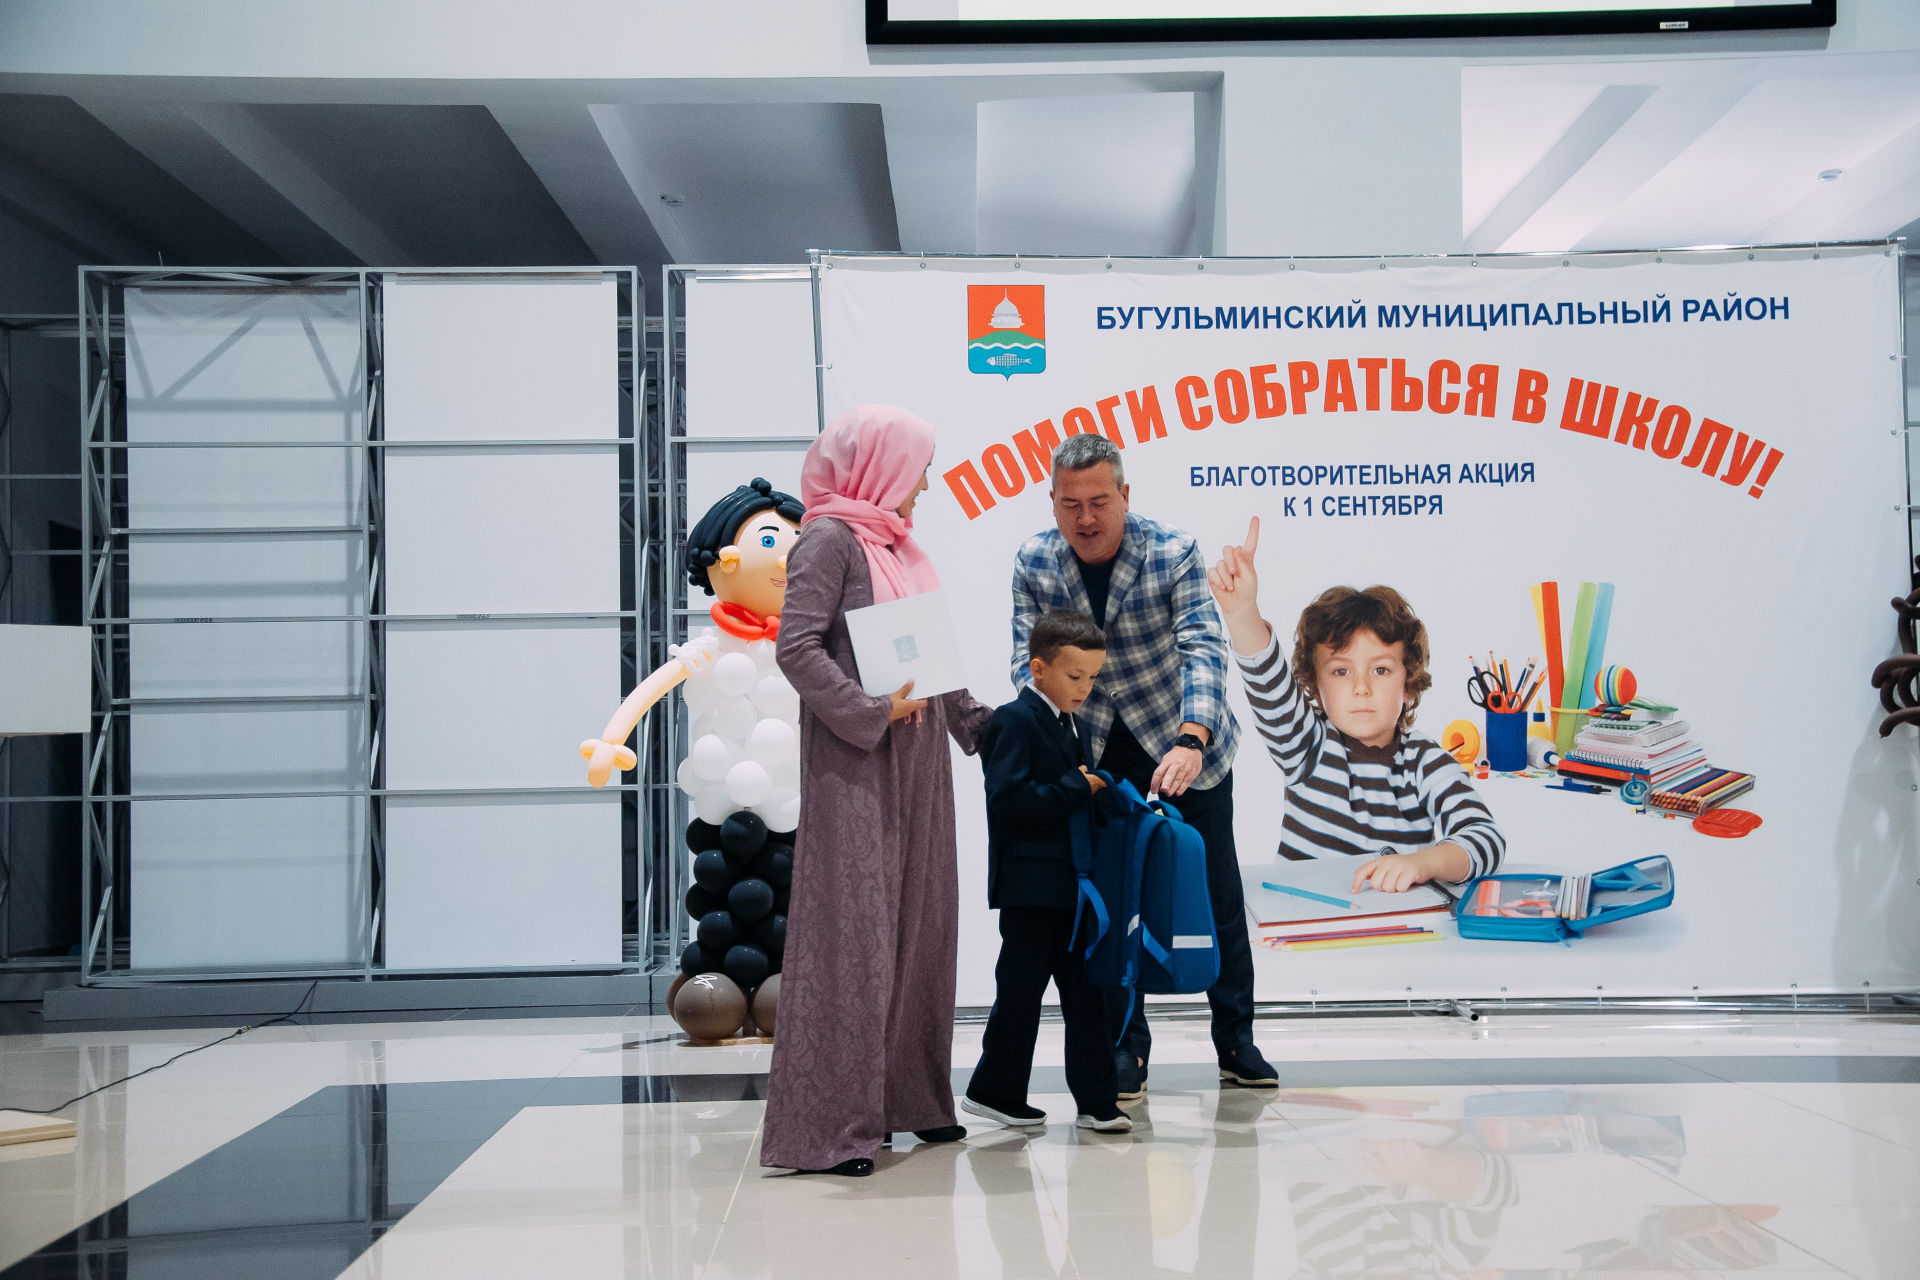 Мэр Бугульмы вручил денежные сертификаты многодетным семьям в рамках акции «Помоги собраться в школу»